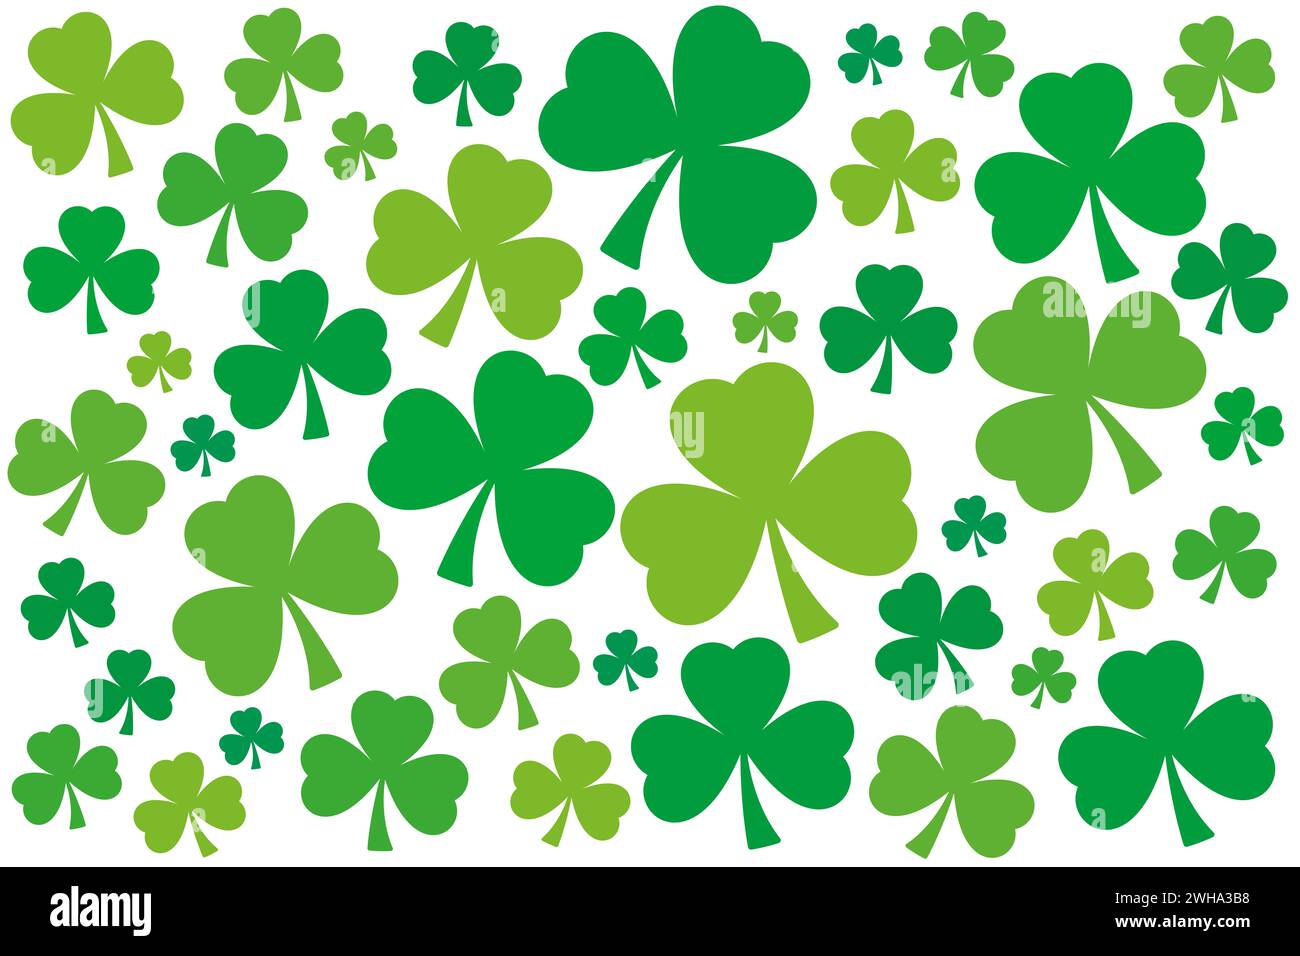 Zahlreiche Schamfelsen, grüner dreiblättriger Kleeblatt. Zufällig angeordnete, leicht verdrehte Trefolien mit verschiedenen Grüntönen. Symbol von Irland. Stockfoto